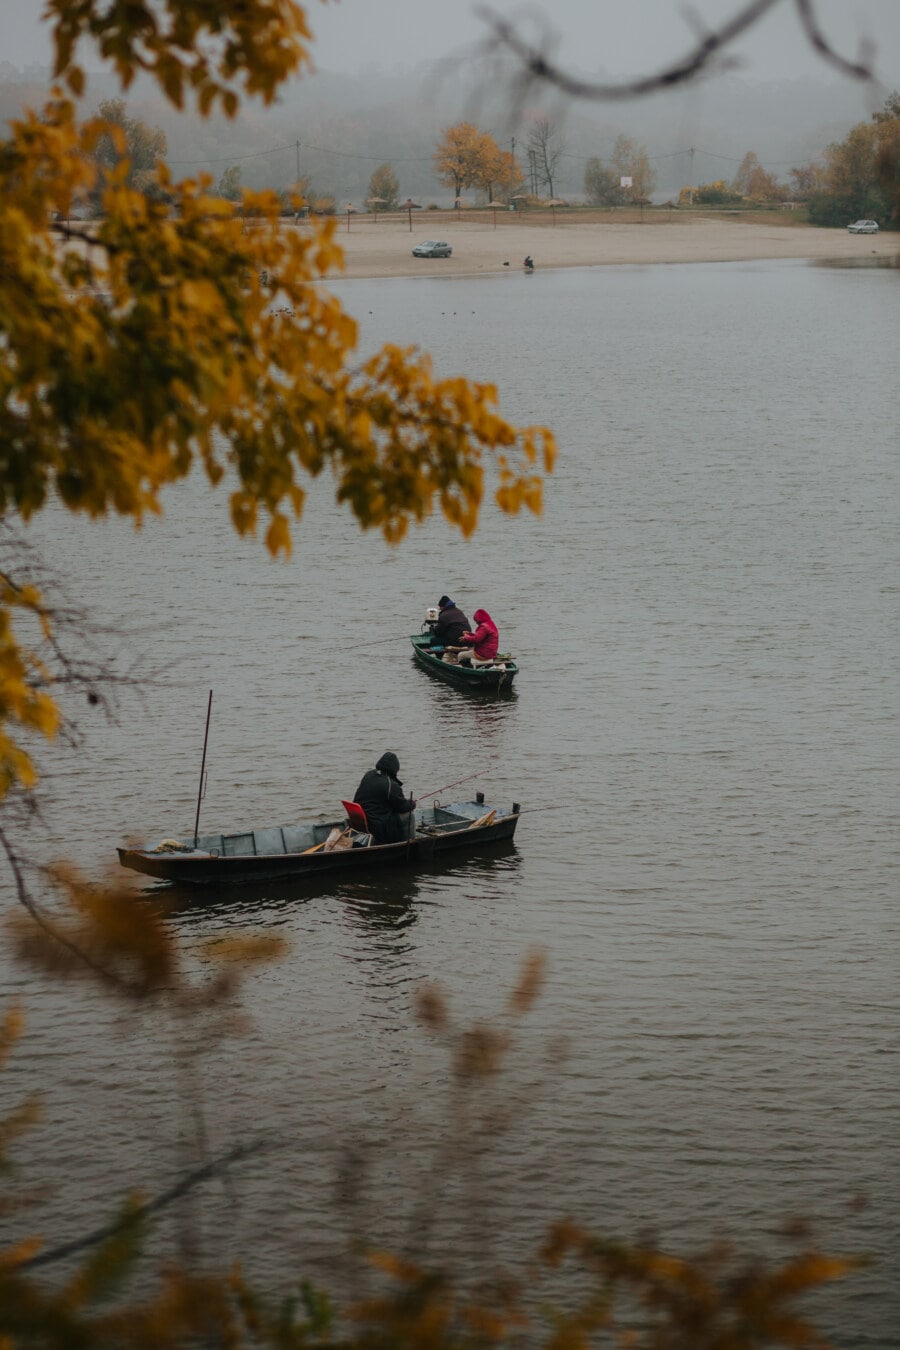 钓鱼船, 秋天季节, 钓鱼竿, 渔具, 河, 船, 水, 湖, 船舶, 景观